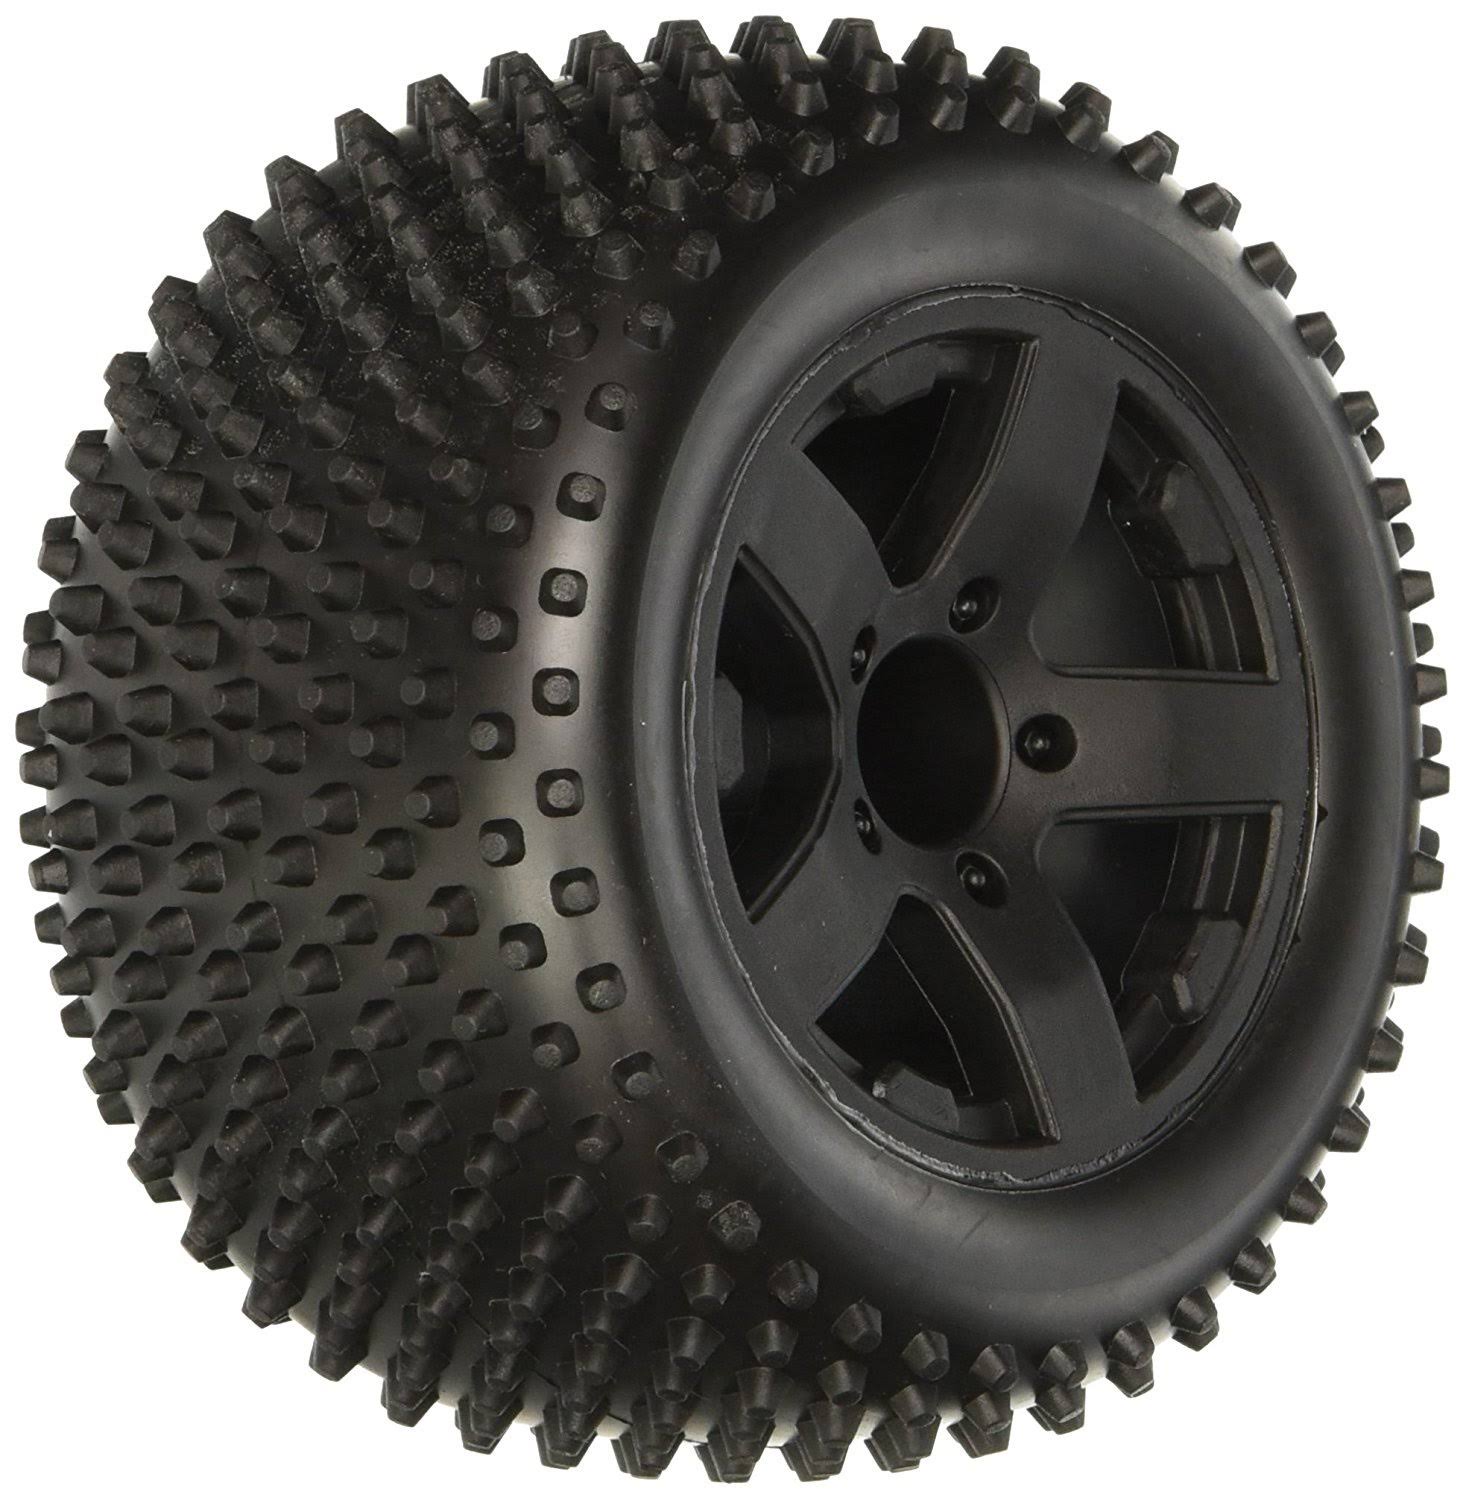 ECX 43006 Rear Tire Premount Wheel - Black. 2pcs